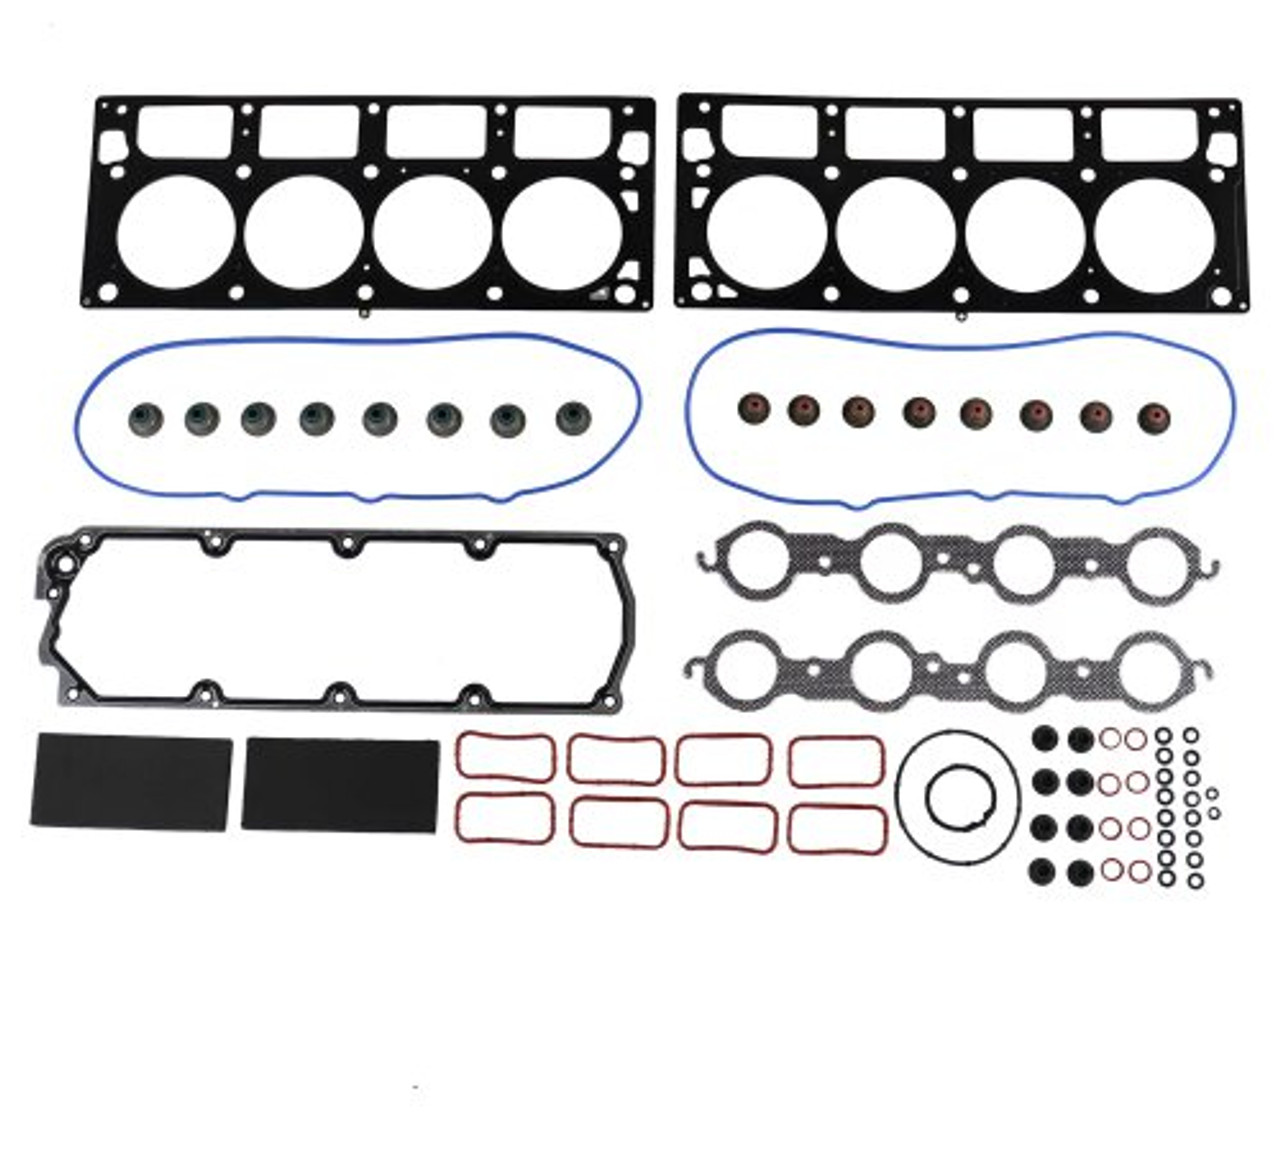 Full Gasket Set - 2015 Chevrolet Camaro 6.2L Engine Parts # FGK3215ZE6